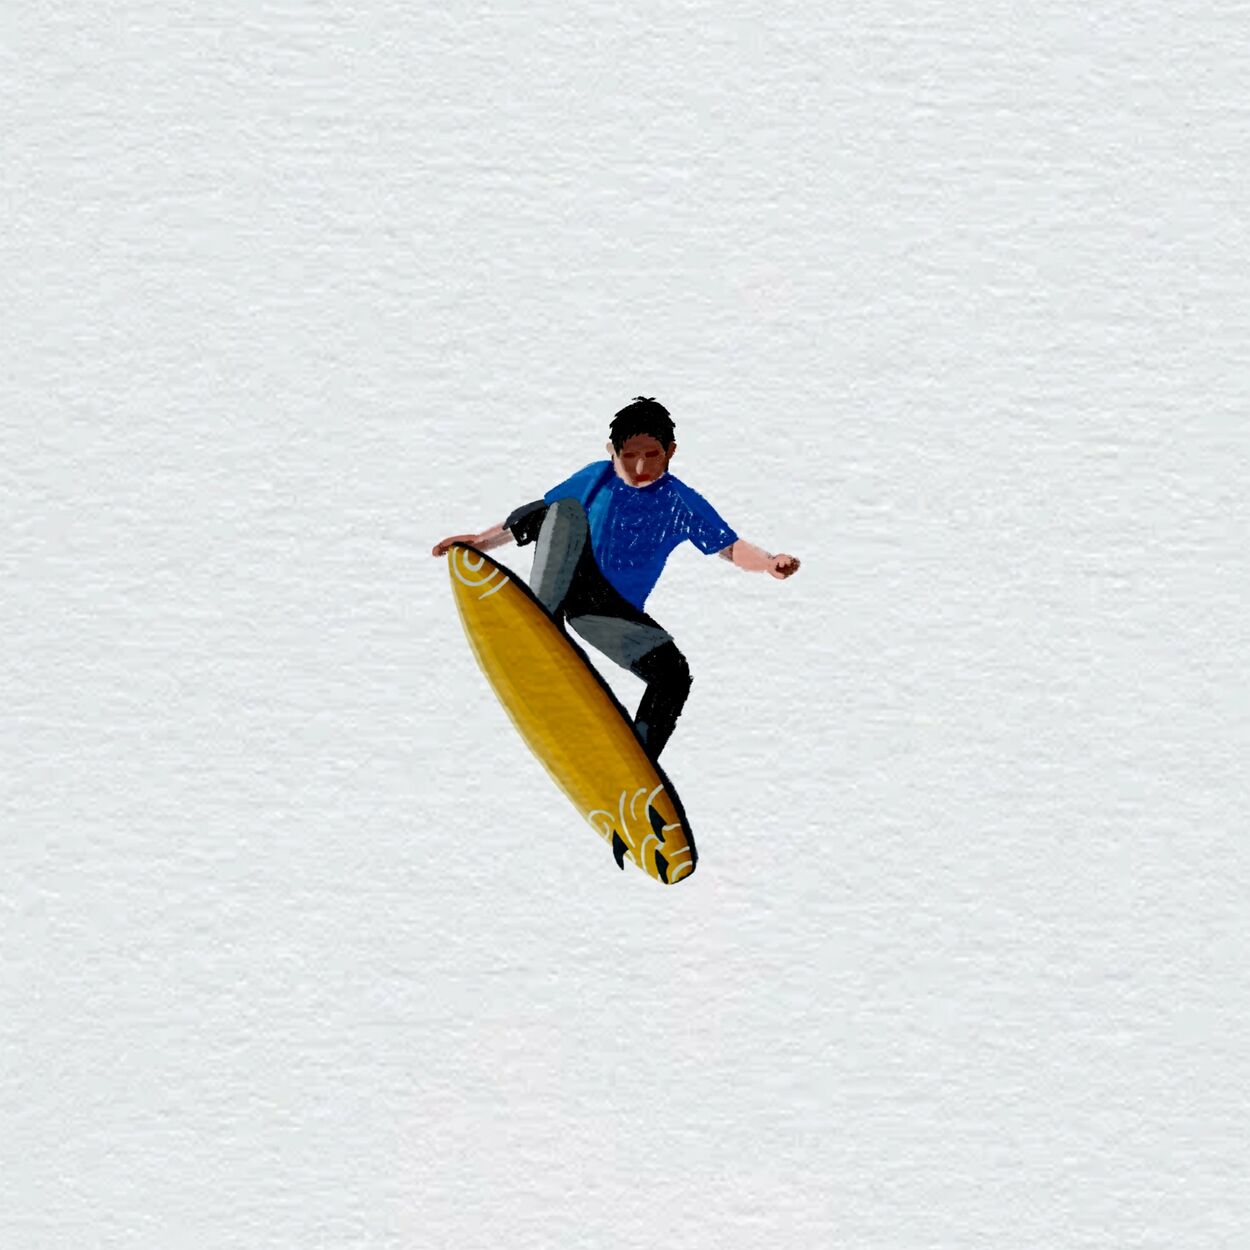 Kim gyeol – Surfer – Single